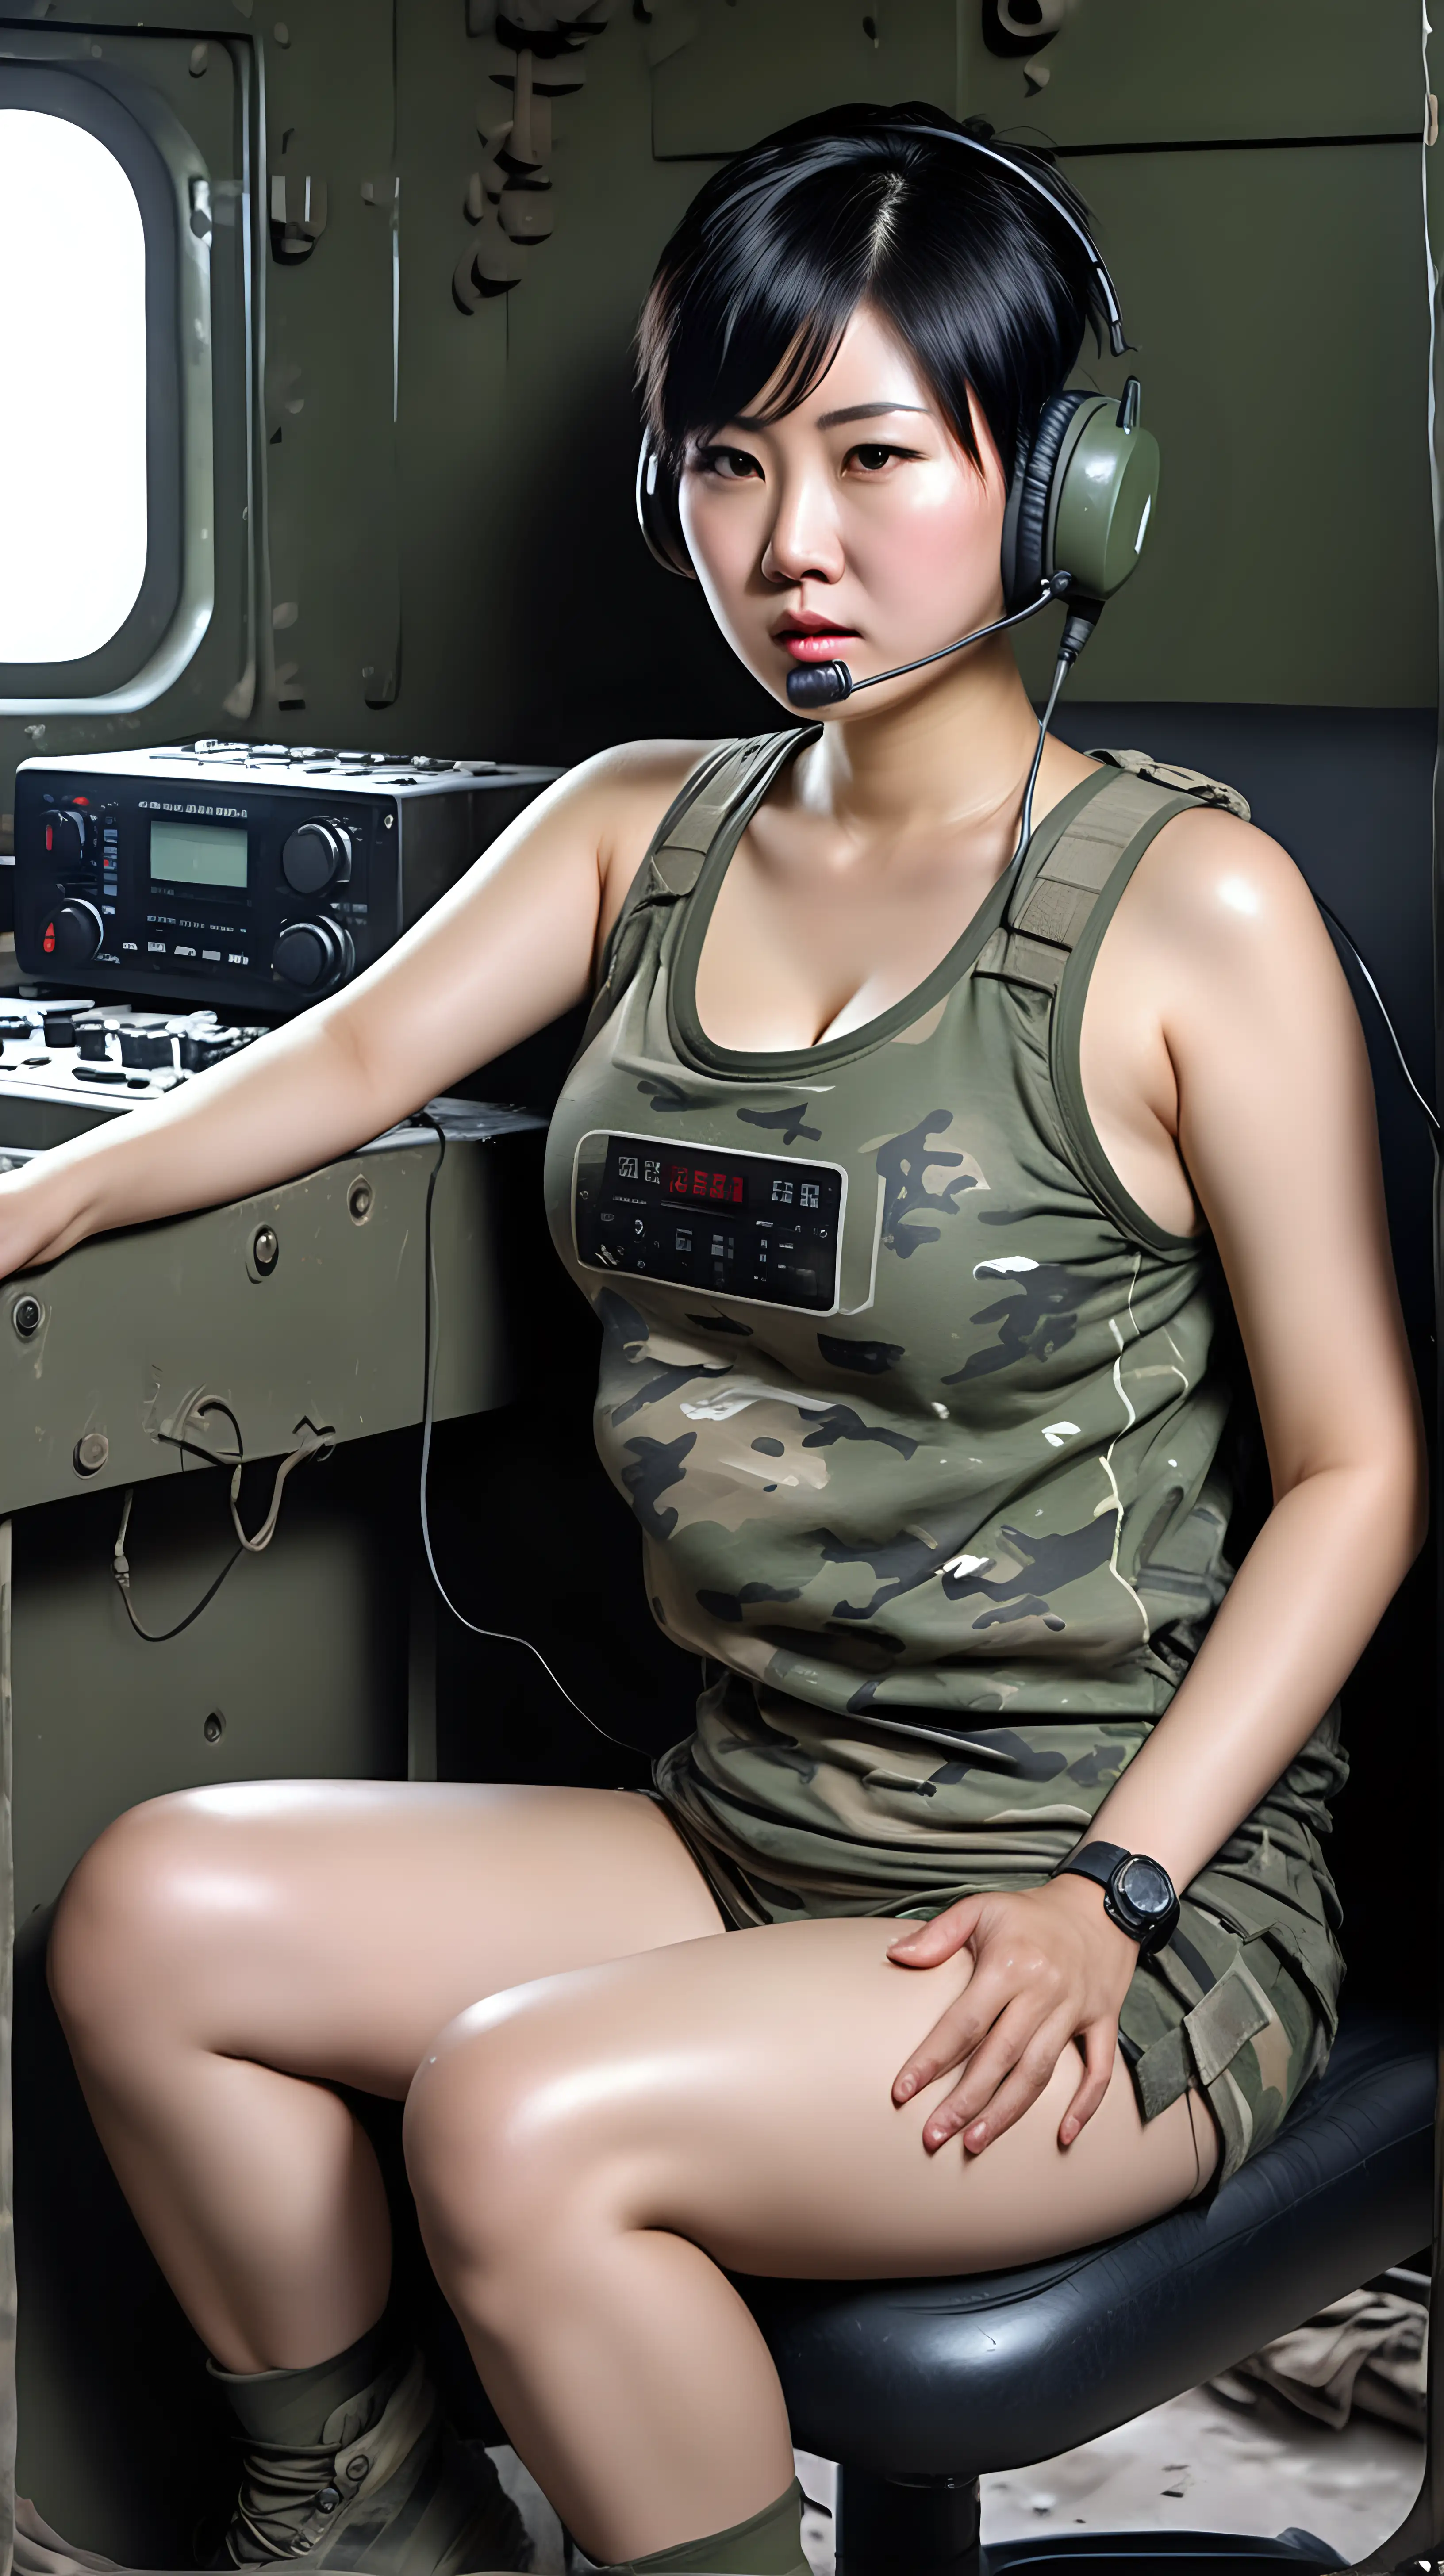 中国女兵
黑短发
huge boobs
camouflage undershirt
衣衫褴褛
满身汗水
坐着操作电台